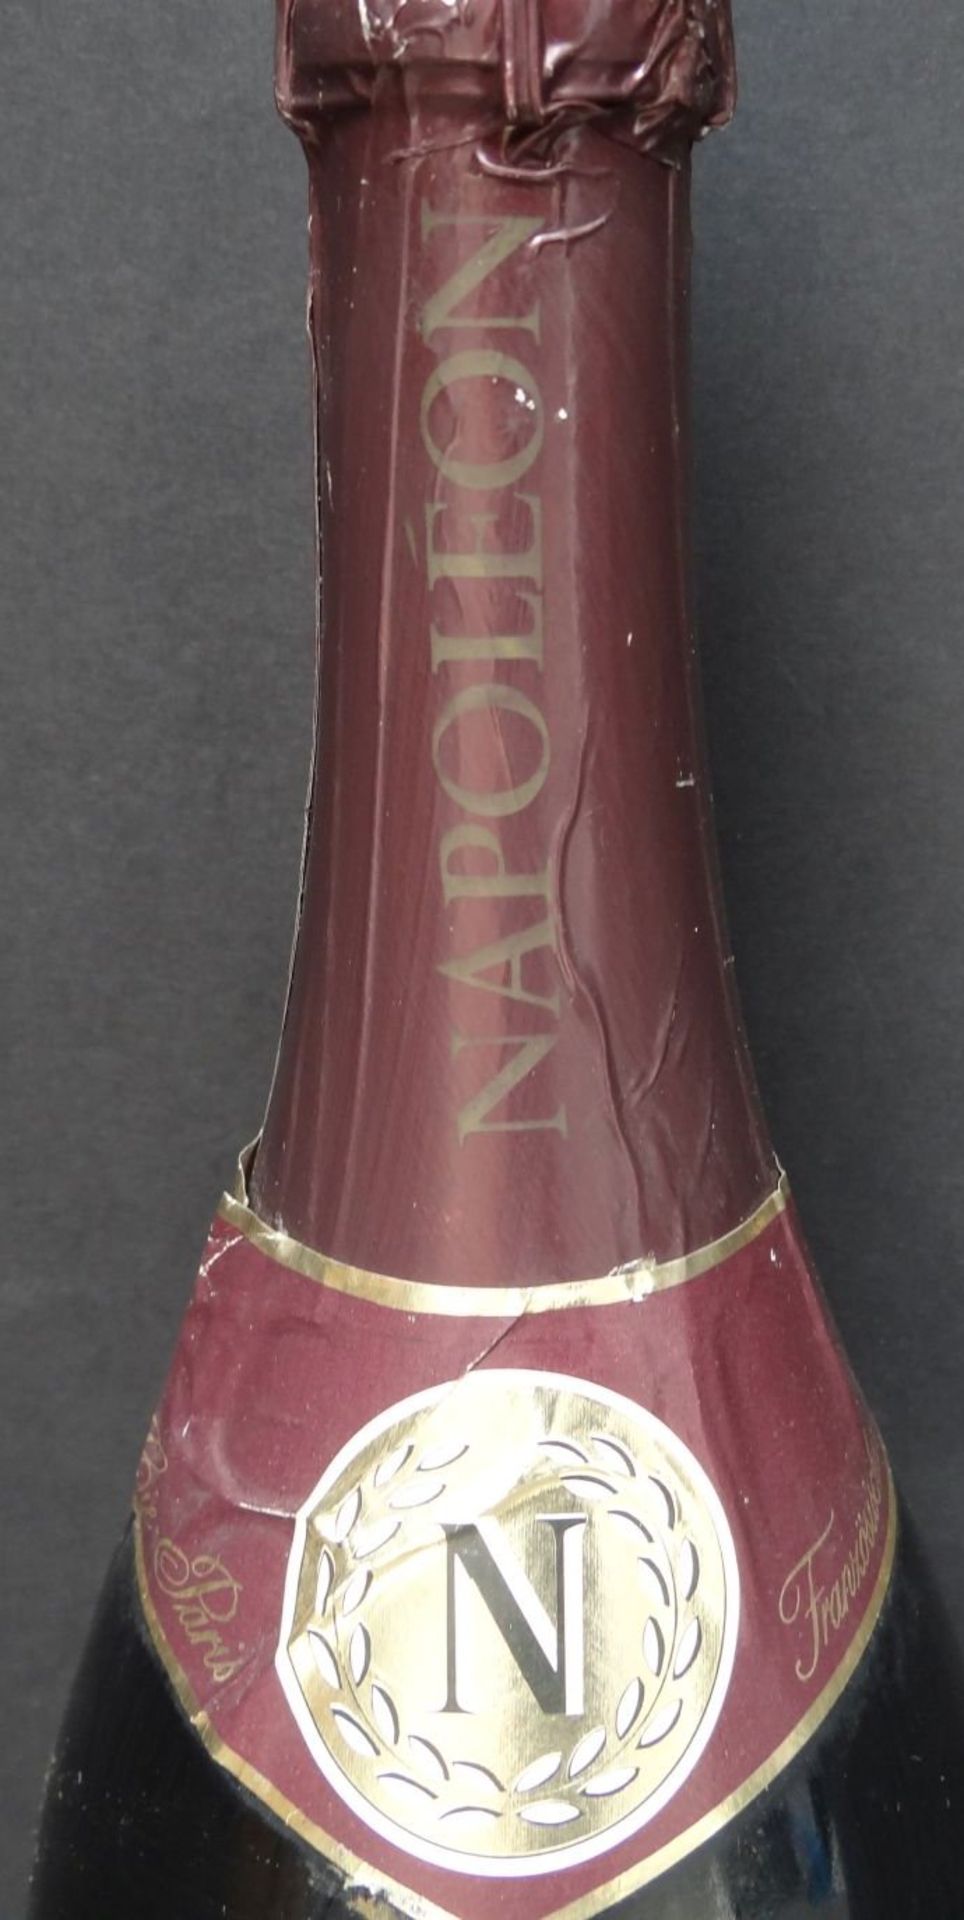 1 1/2 Liter Flasche "Napoleon" Muscat Rose Sekt - Bild 3 aus 3